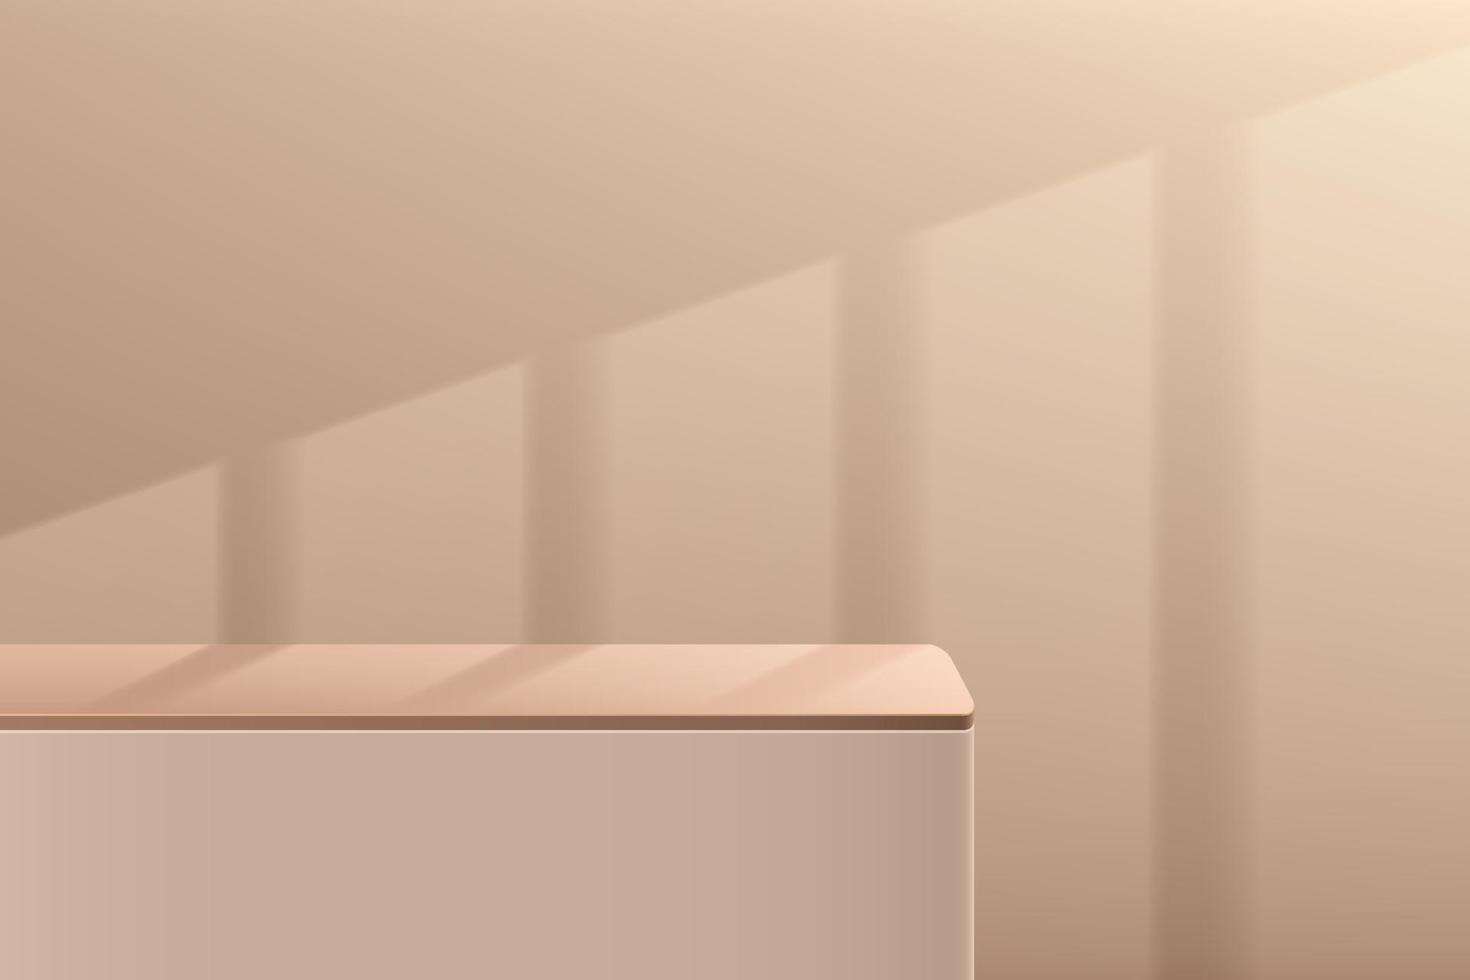 piédestal de cube d'angle rond 3d abstrait marron et beige ou podium avec éclairage de fenêtre. scène murale minimale pour la présentation d'affichage de produits cosmétiques. conception de plate-forme de rendu géométrique vectoriel. vecteur